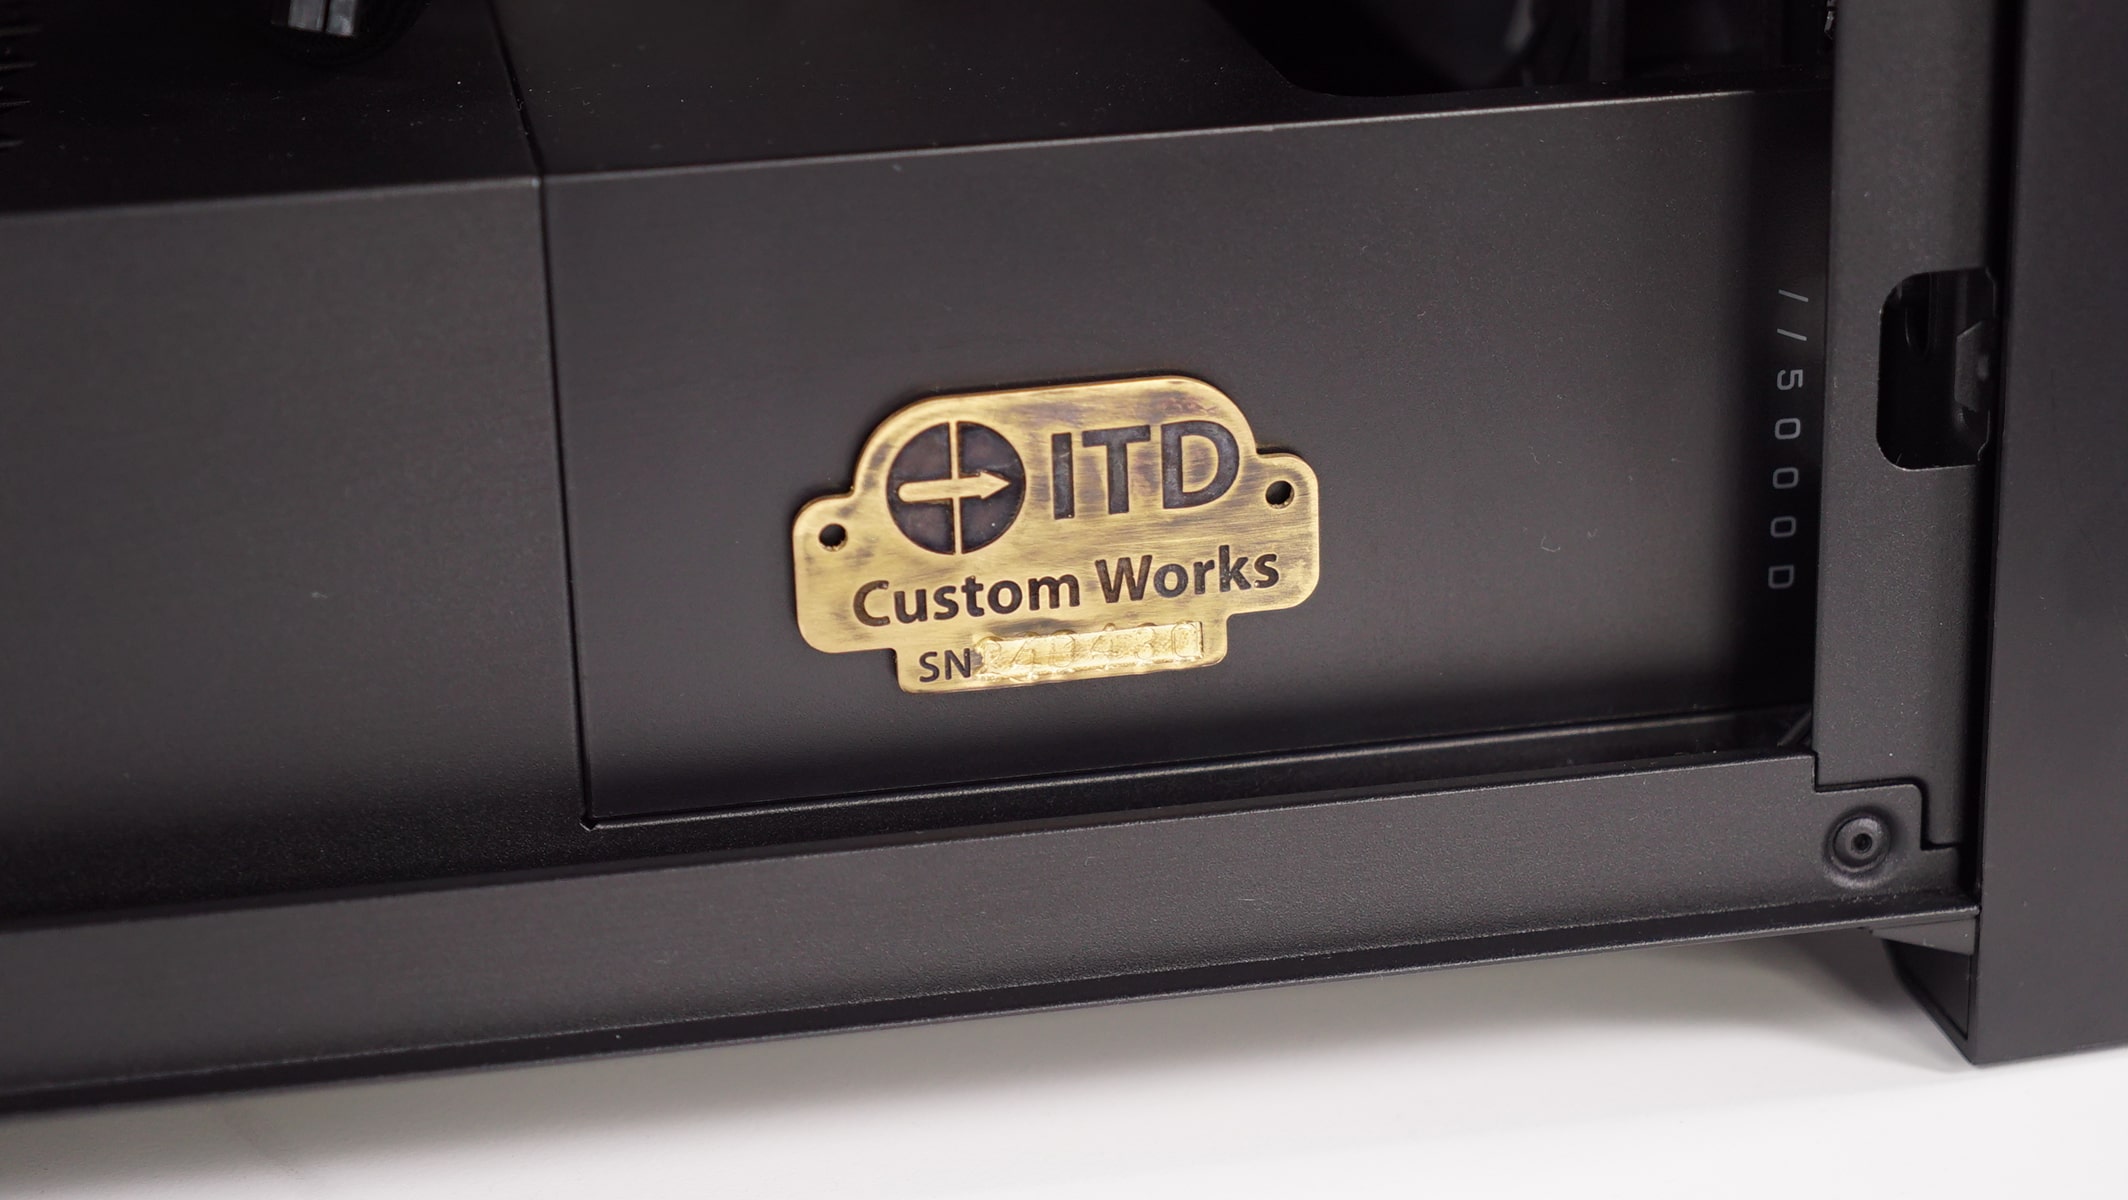 ITD Custom Works Cronus iCUE